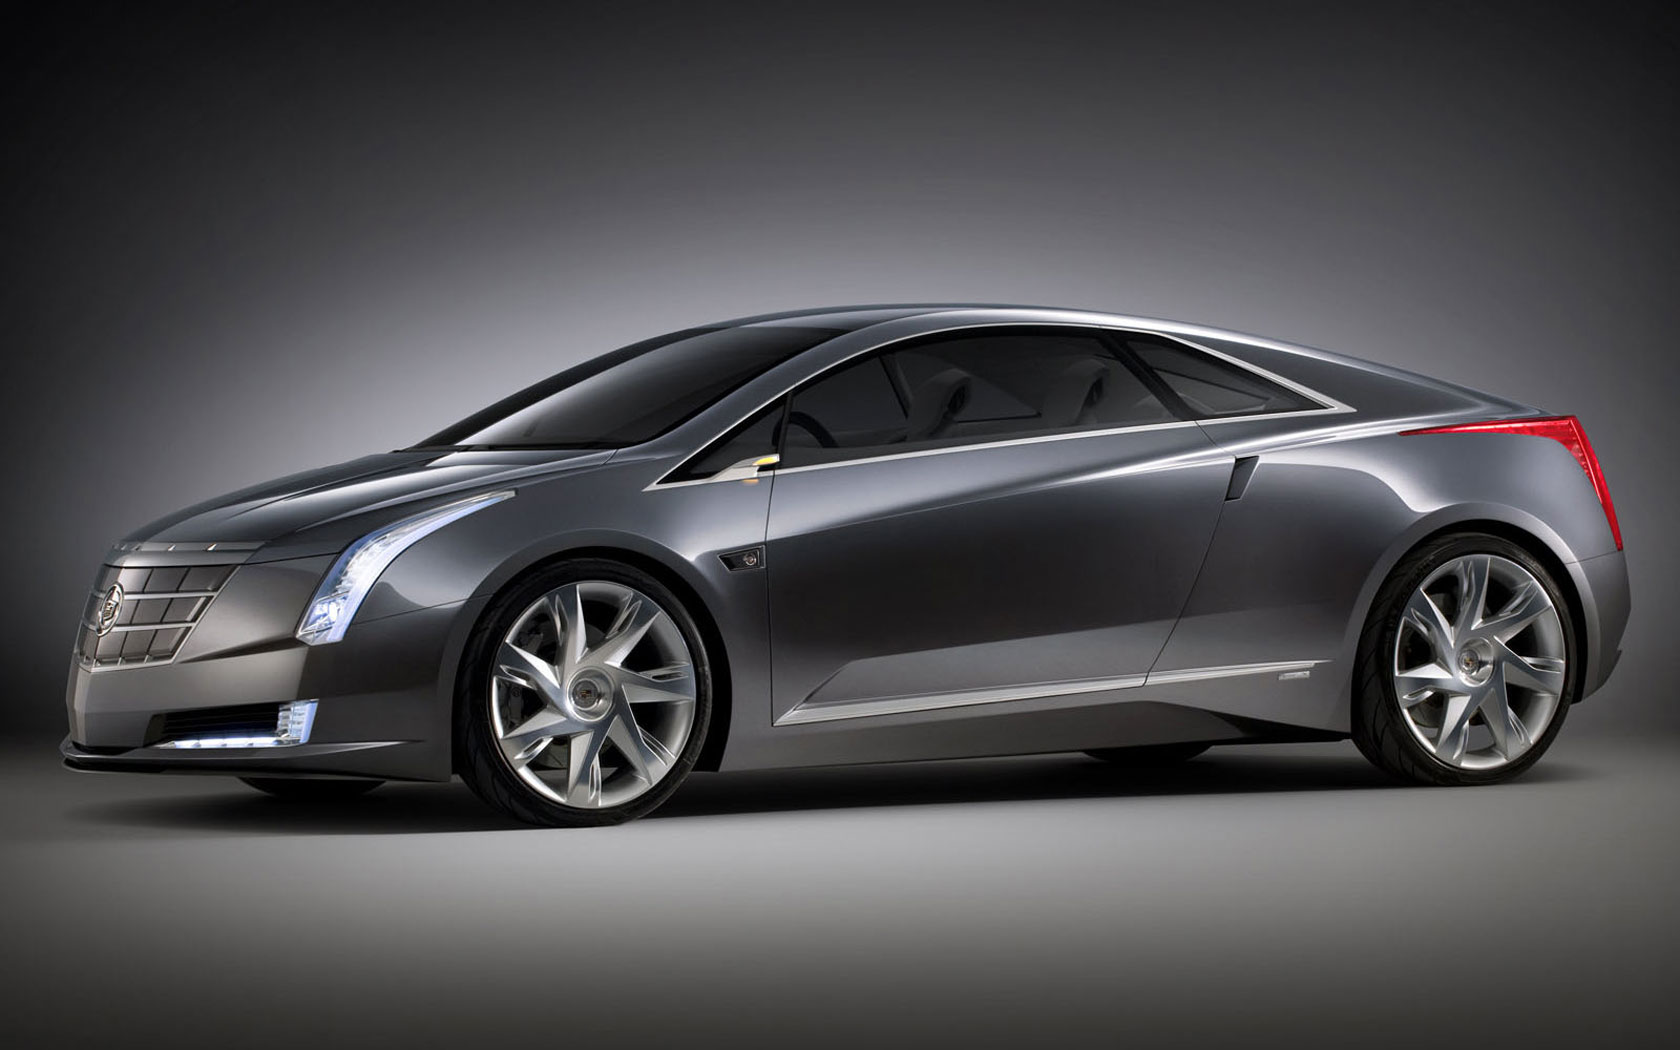  Cadillac Converj Concept 